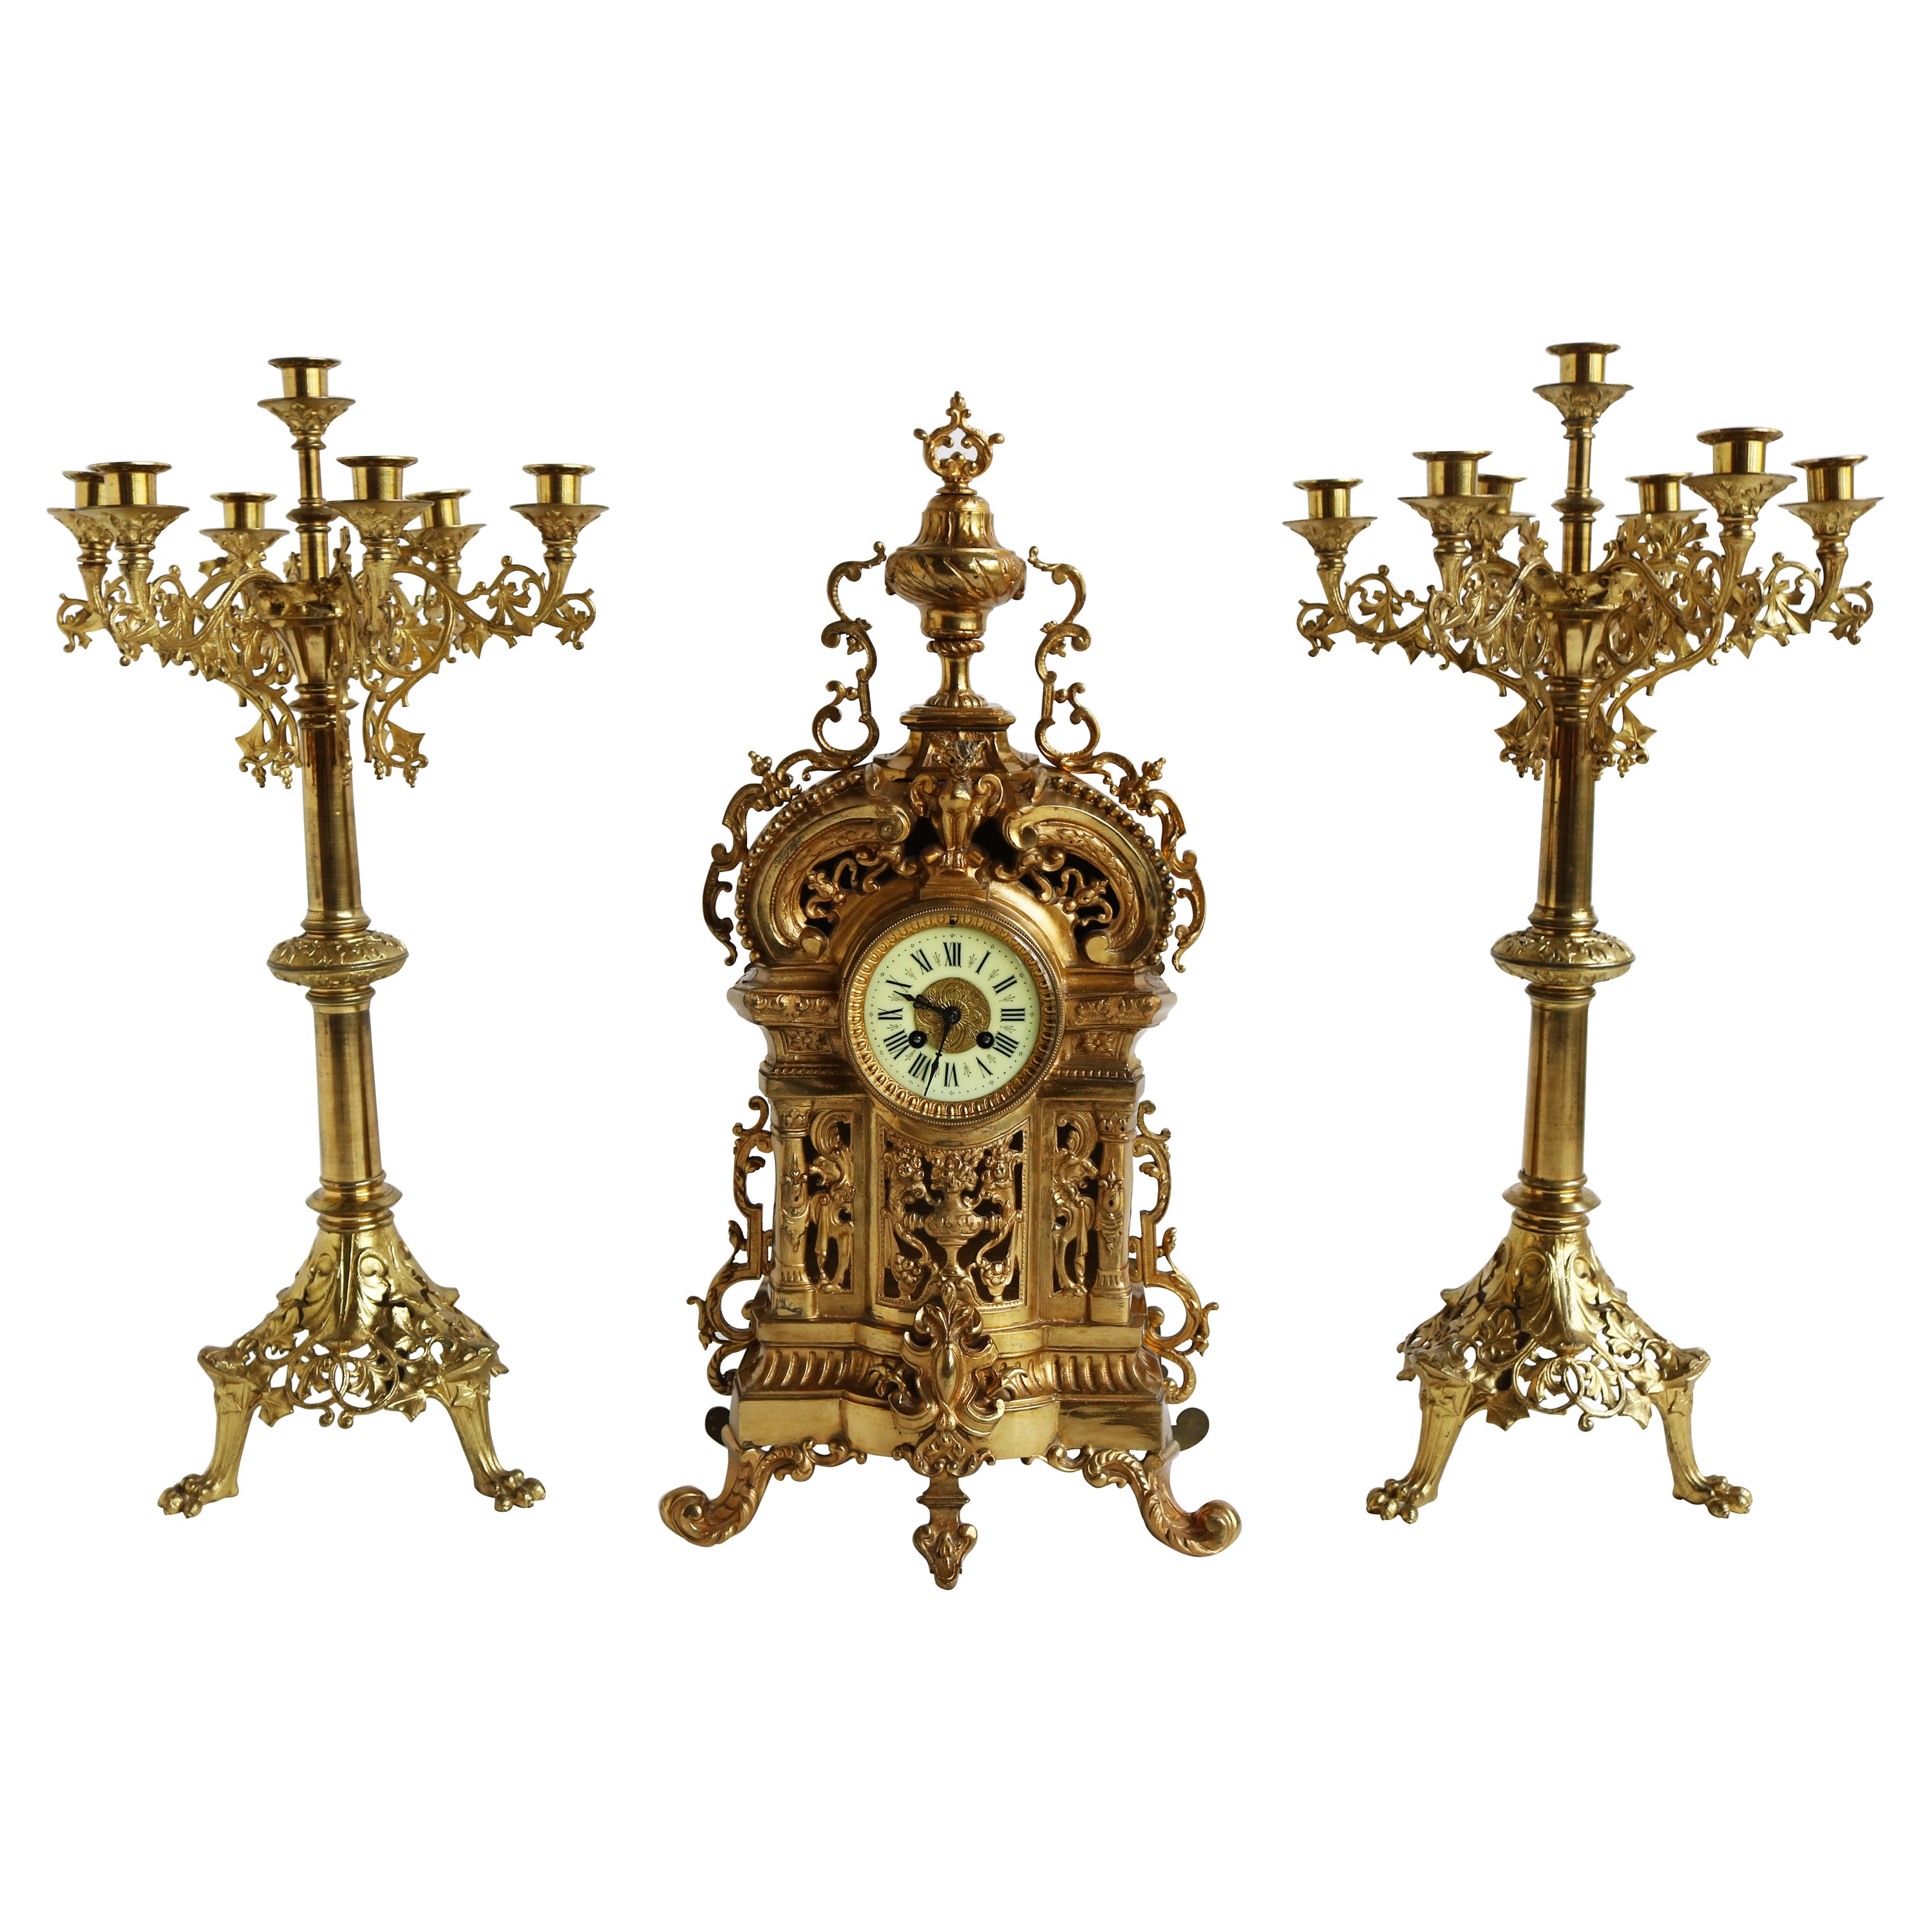 Très grand ensemble d'horloge classique française ancienne en bronze doré avec feuilles d'acanthe du 19ème siècle